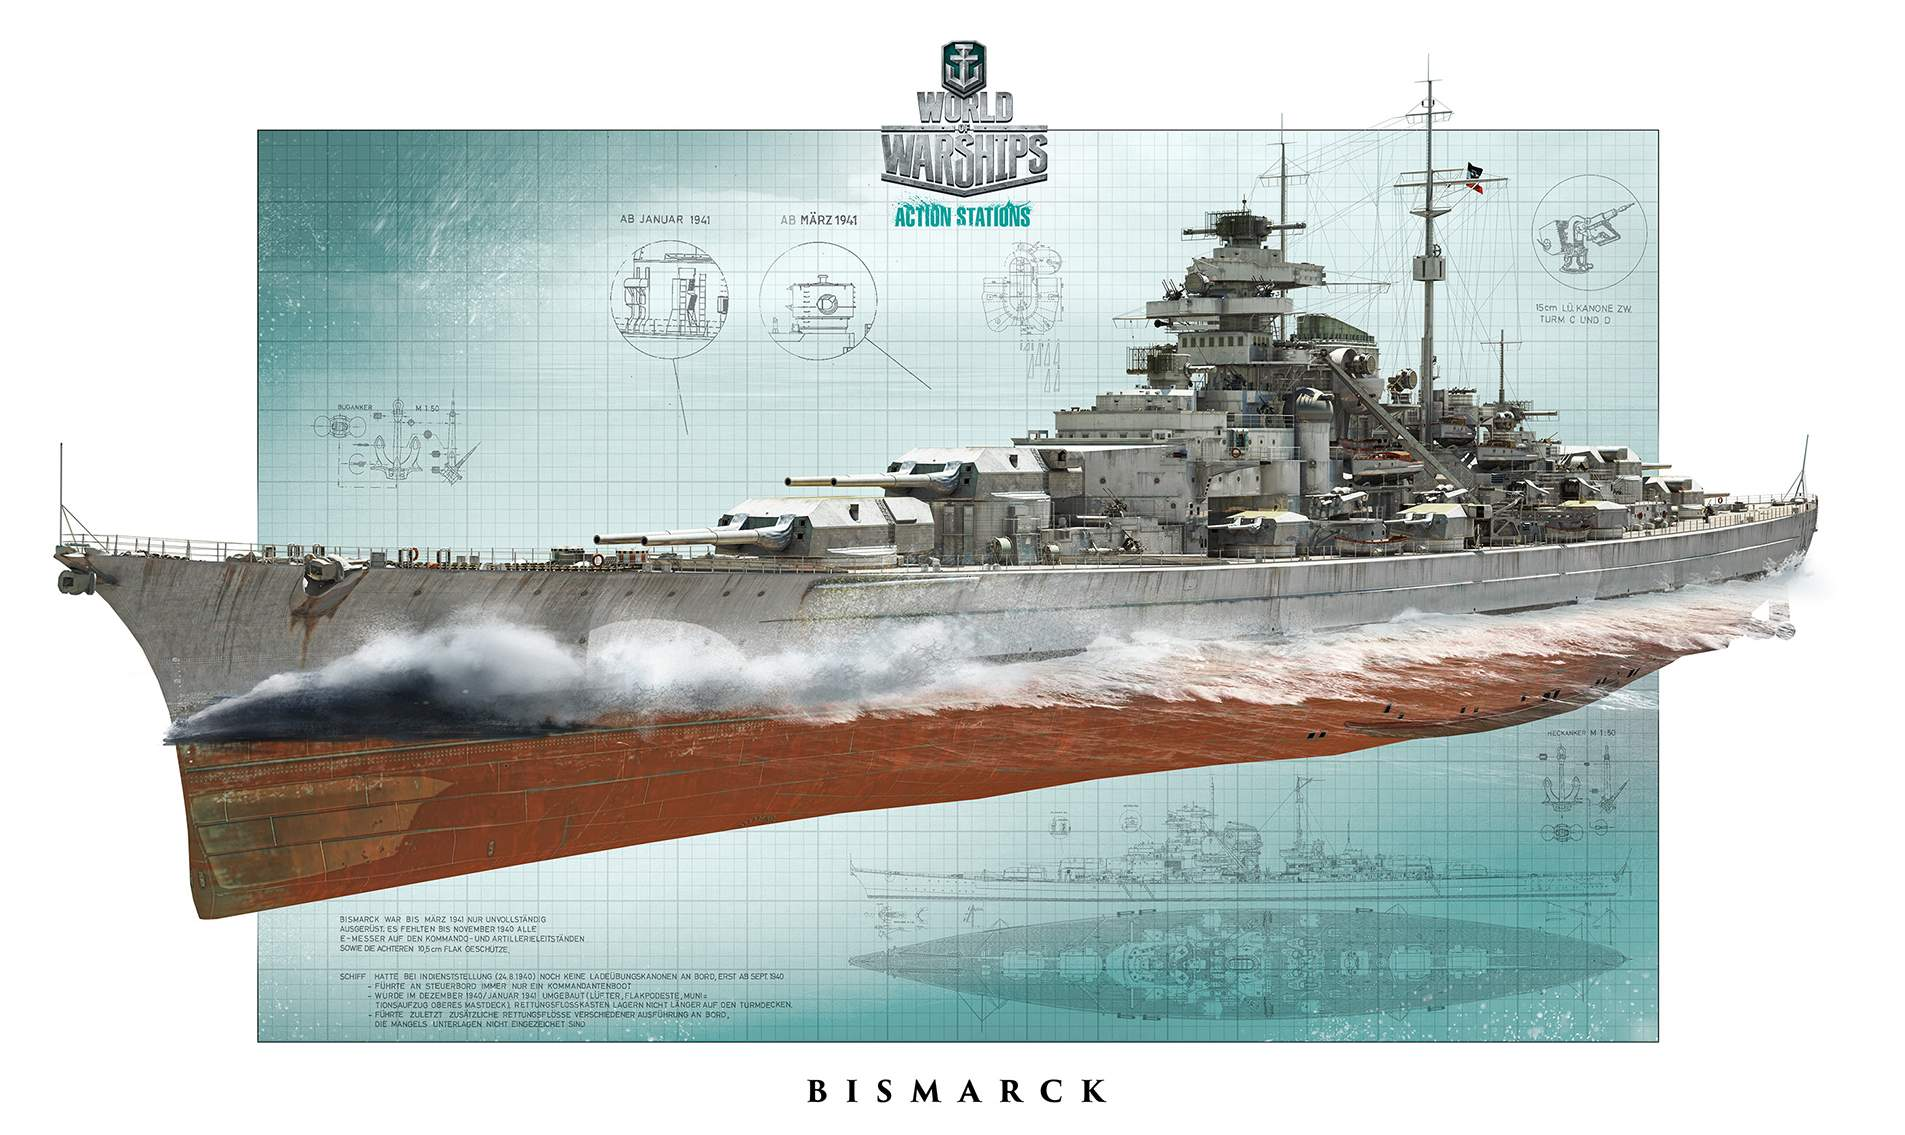 Bismarck Ship World Of Warships Video Games Artwork Ship Battleships Kriegsmarine Wargaming 1905x1135